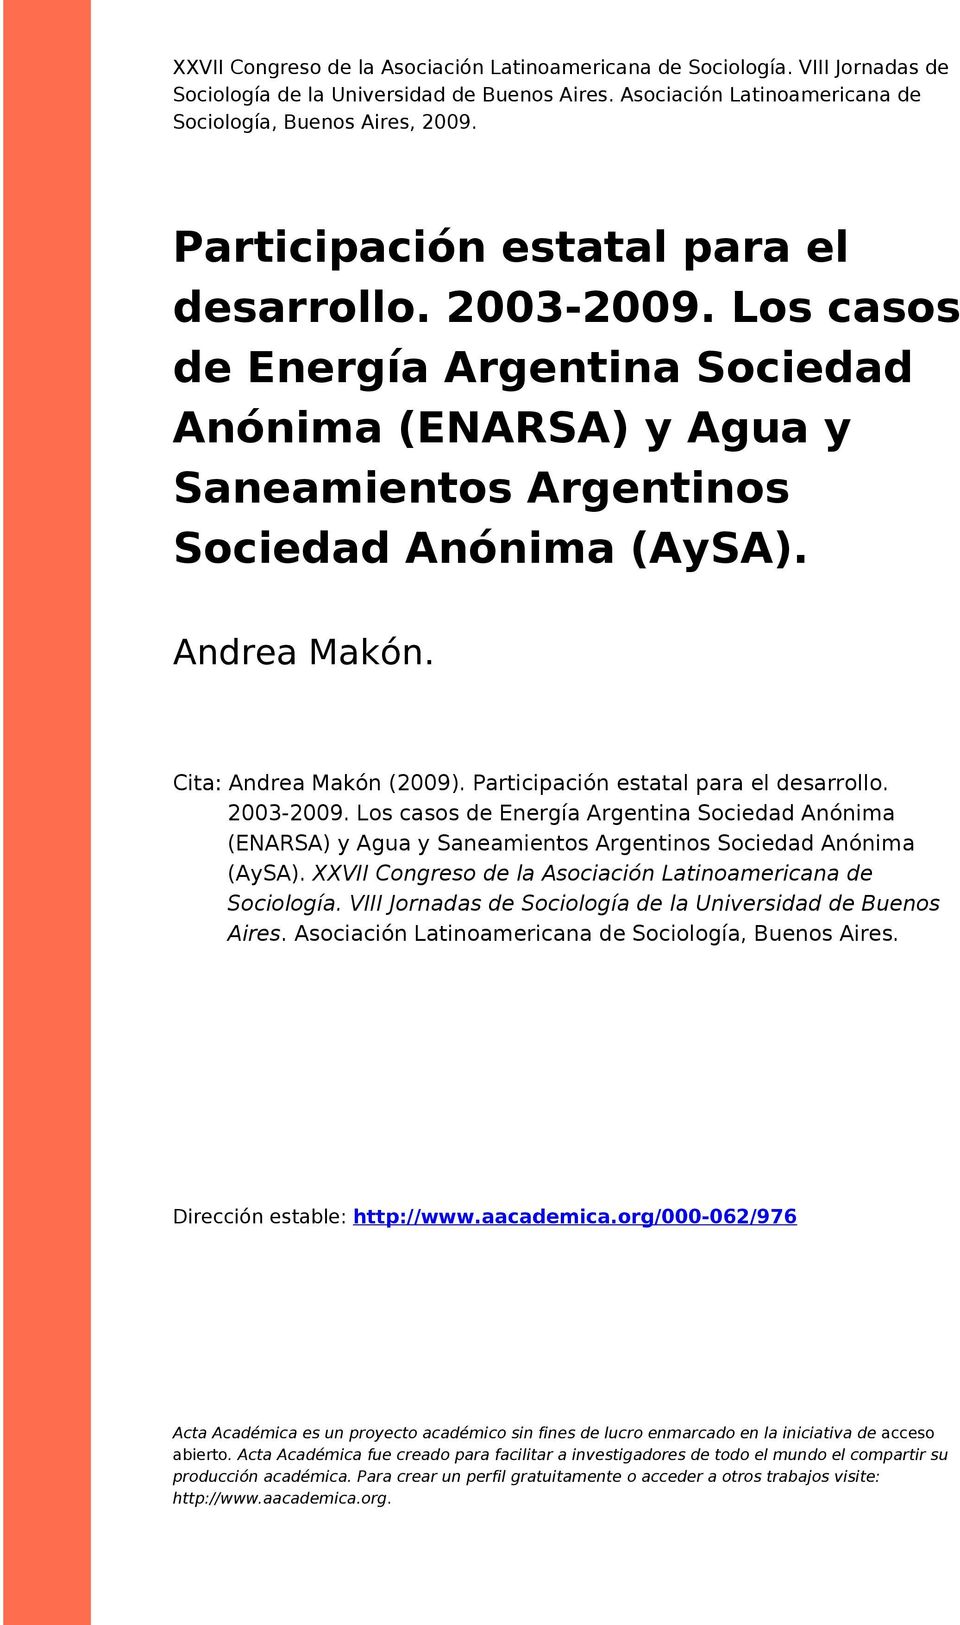 Cita: Andrea Makón (2009). Participación estatal para el desarrollo. 2003-2009. Los casos de Energía Argentina Sociedad Anónima (ENARSA) y Agua y Saneamientos Argentinos Sociedad Anónima (AySA).